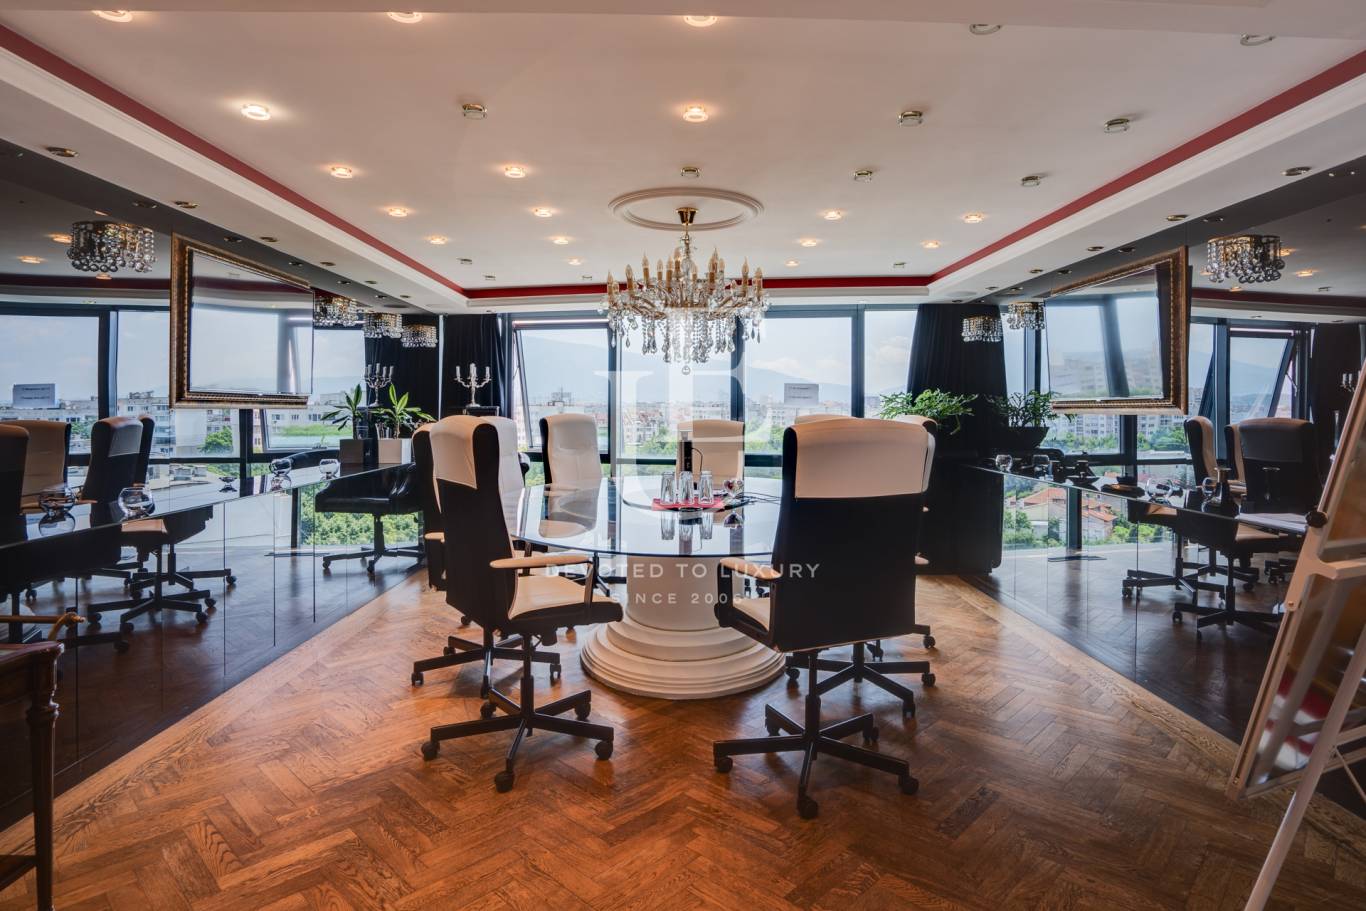 Офис под наем в София, Хаджи Димитър - код на имота: K20425 - image 5